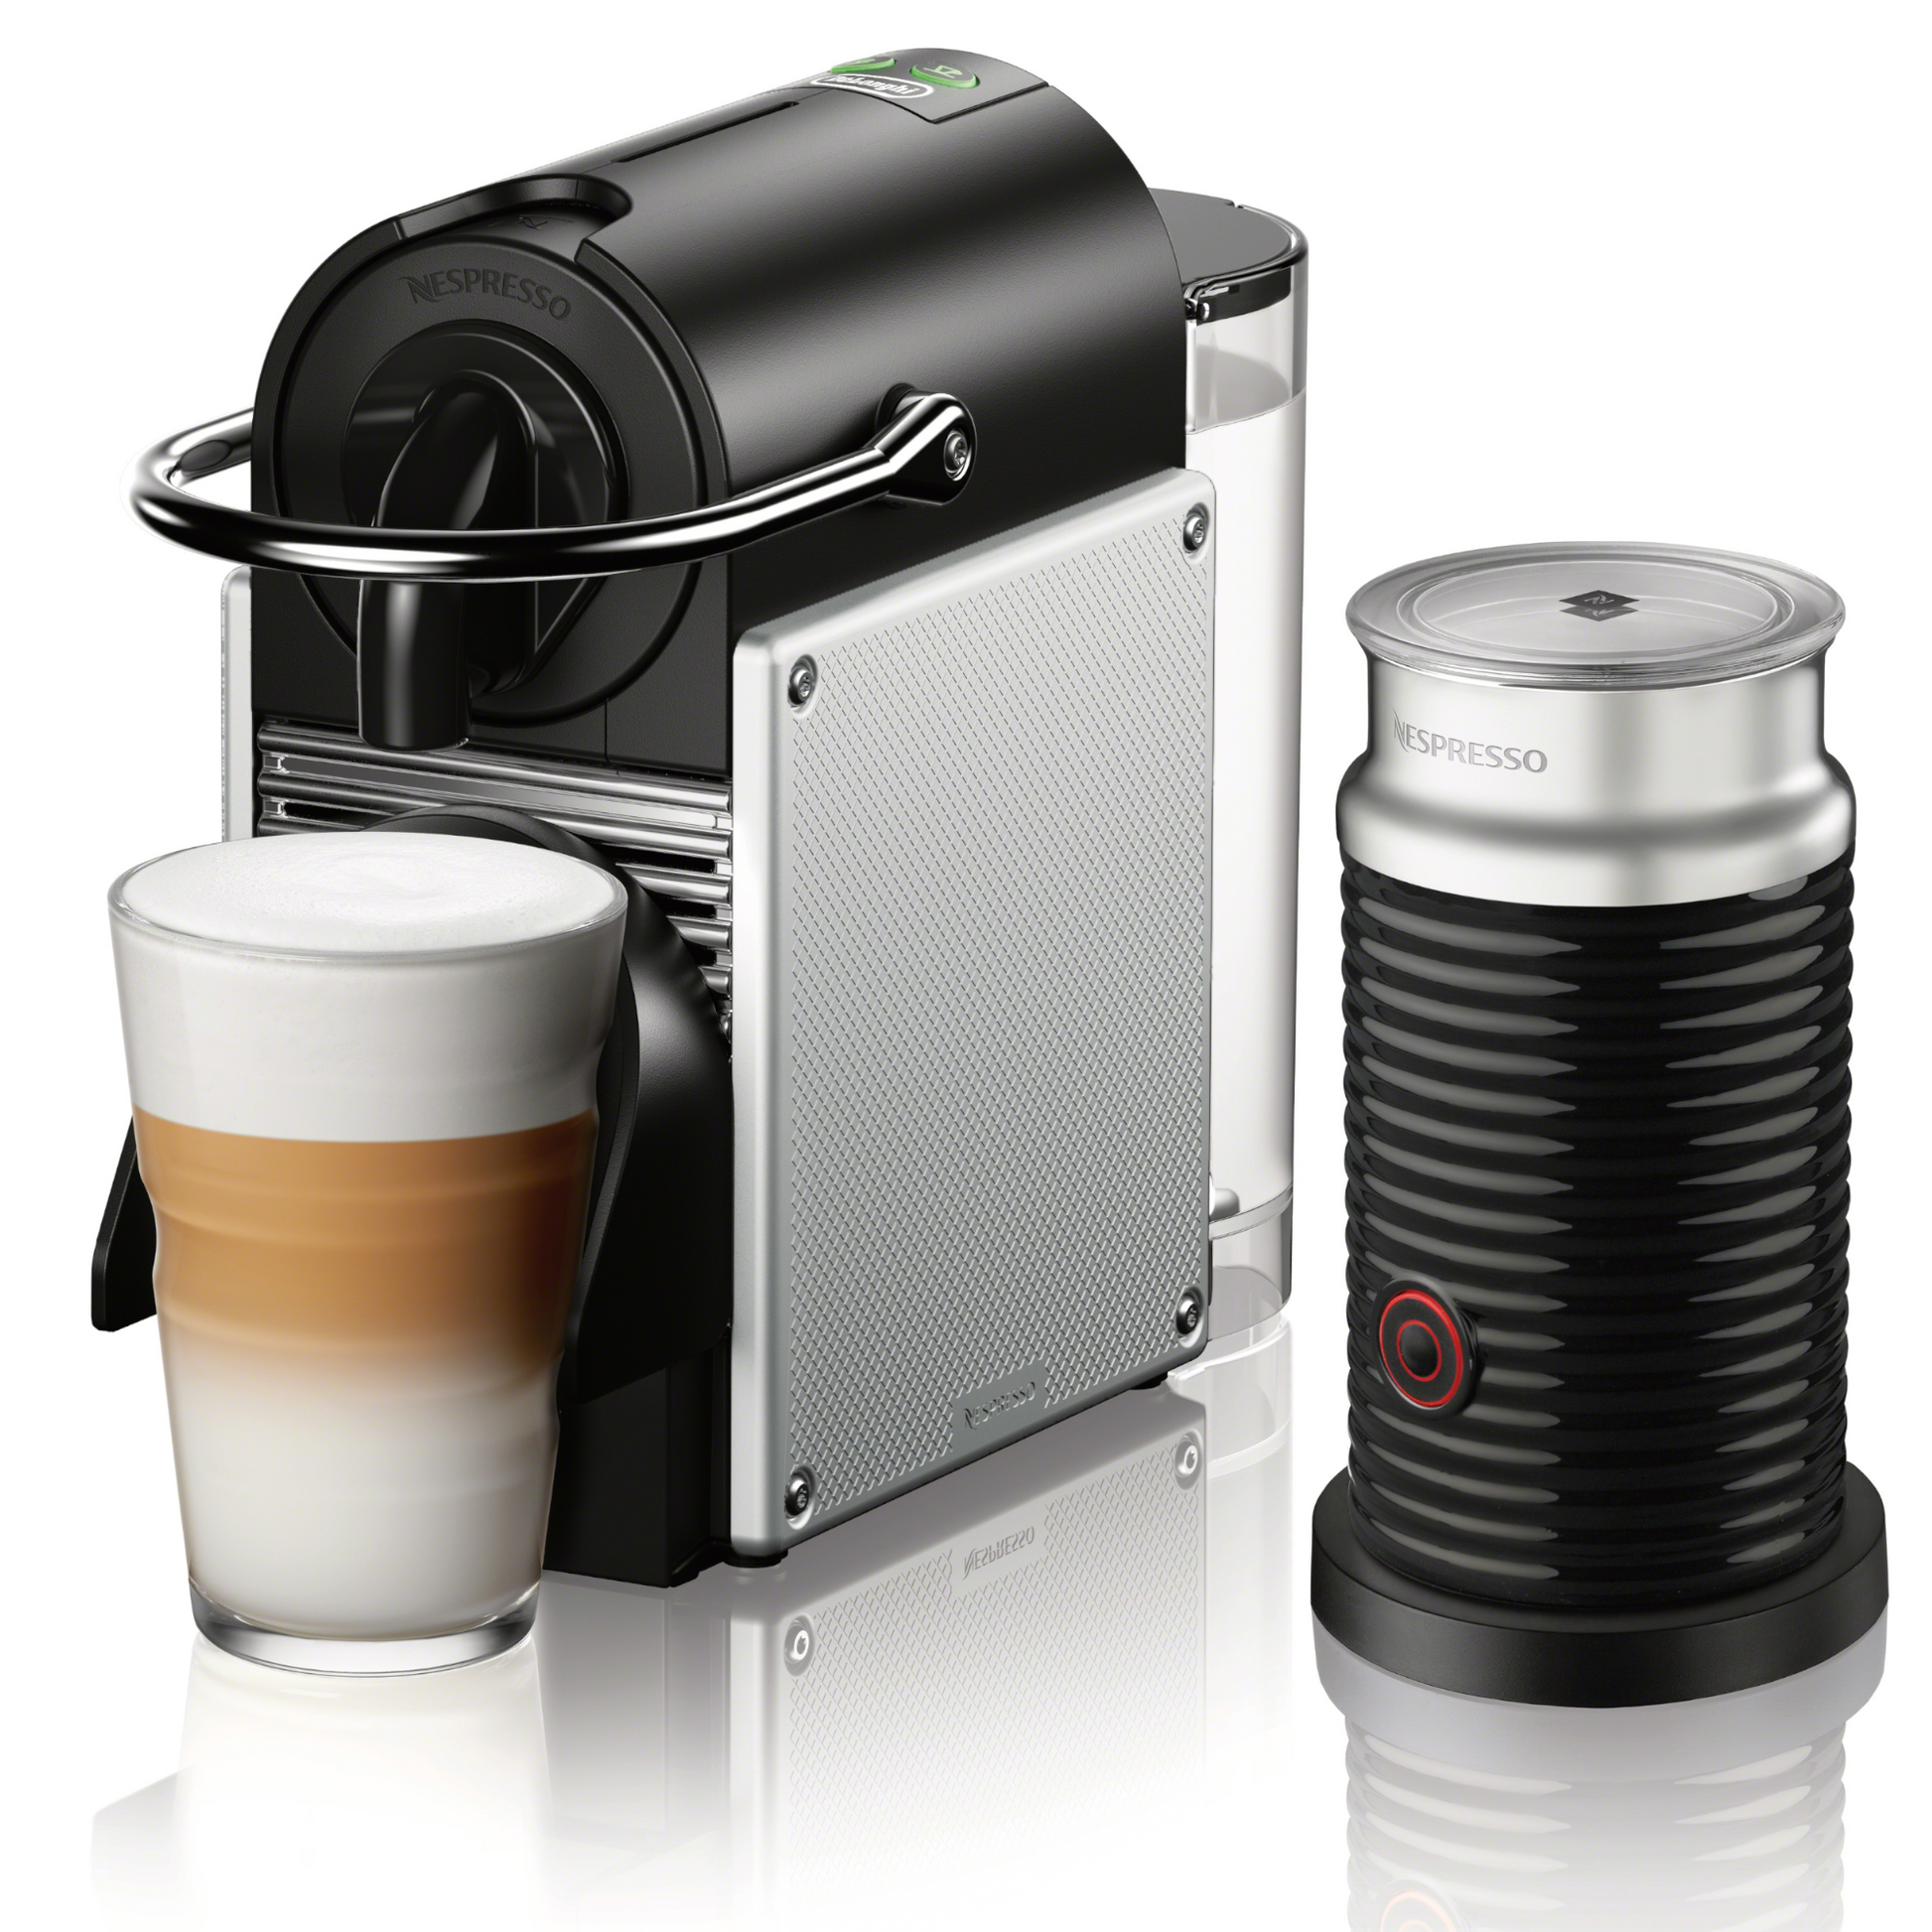 Aeroccino 4 vs Refresh  Nespresso, Small designs, Different